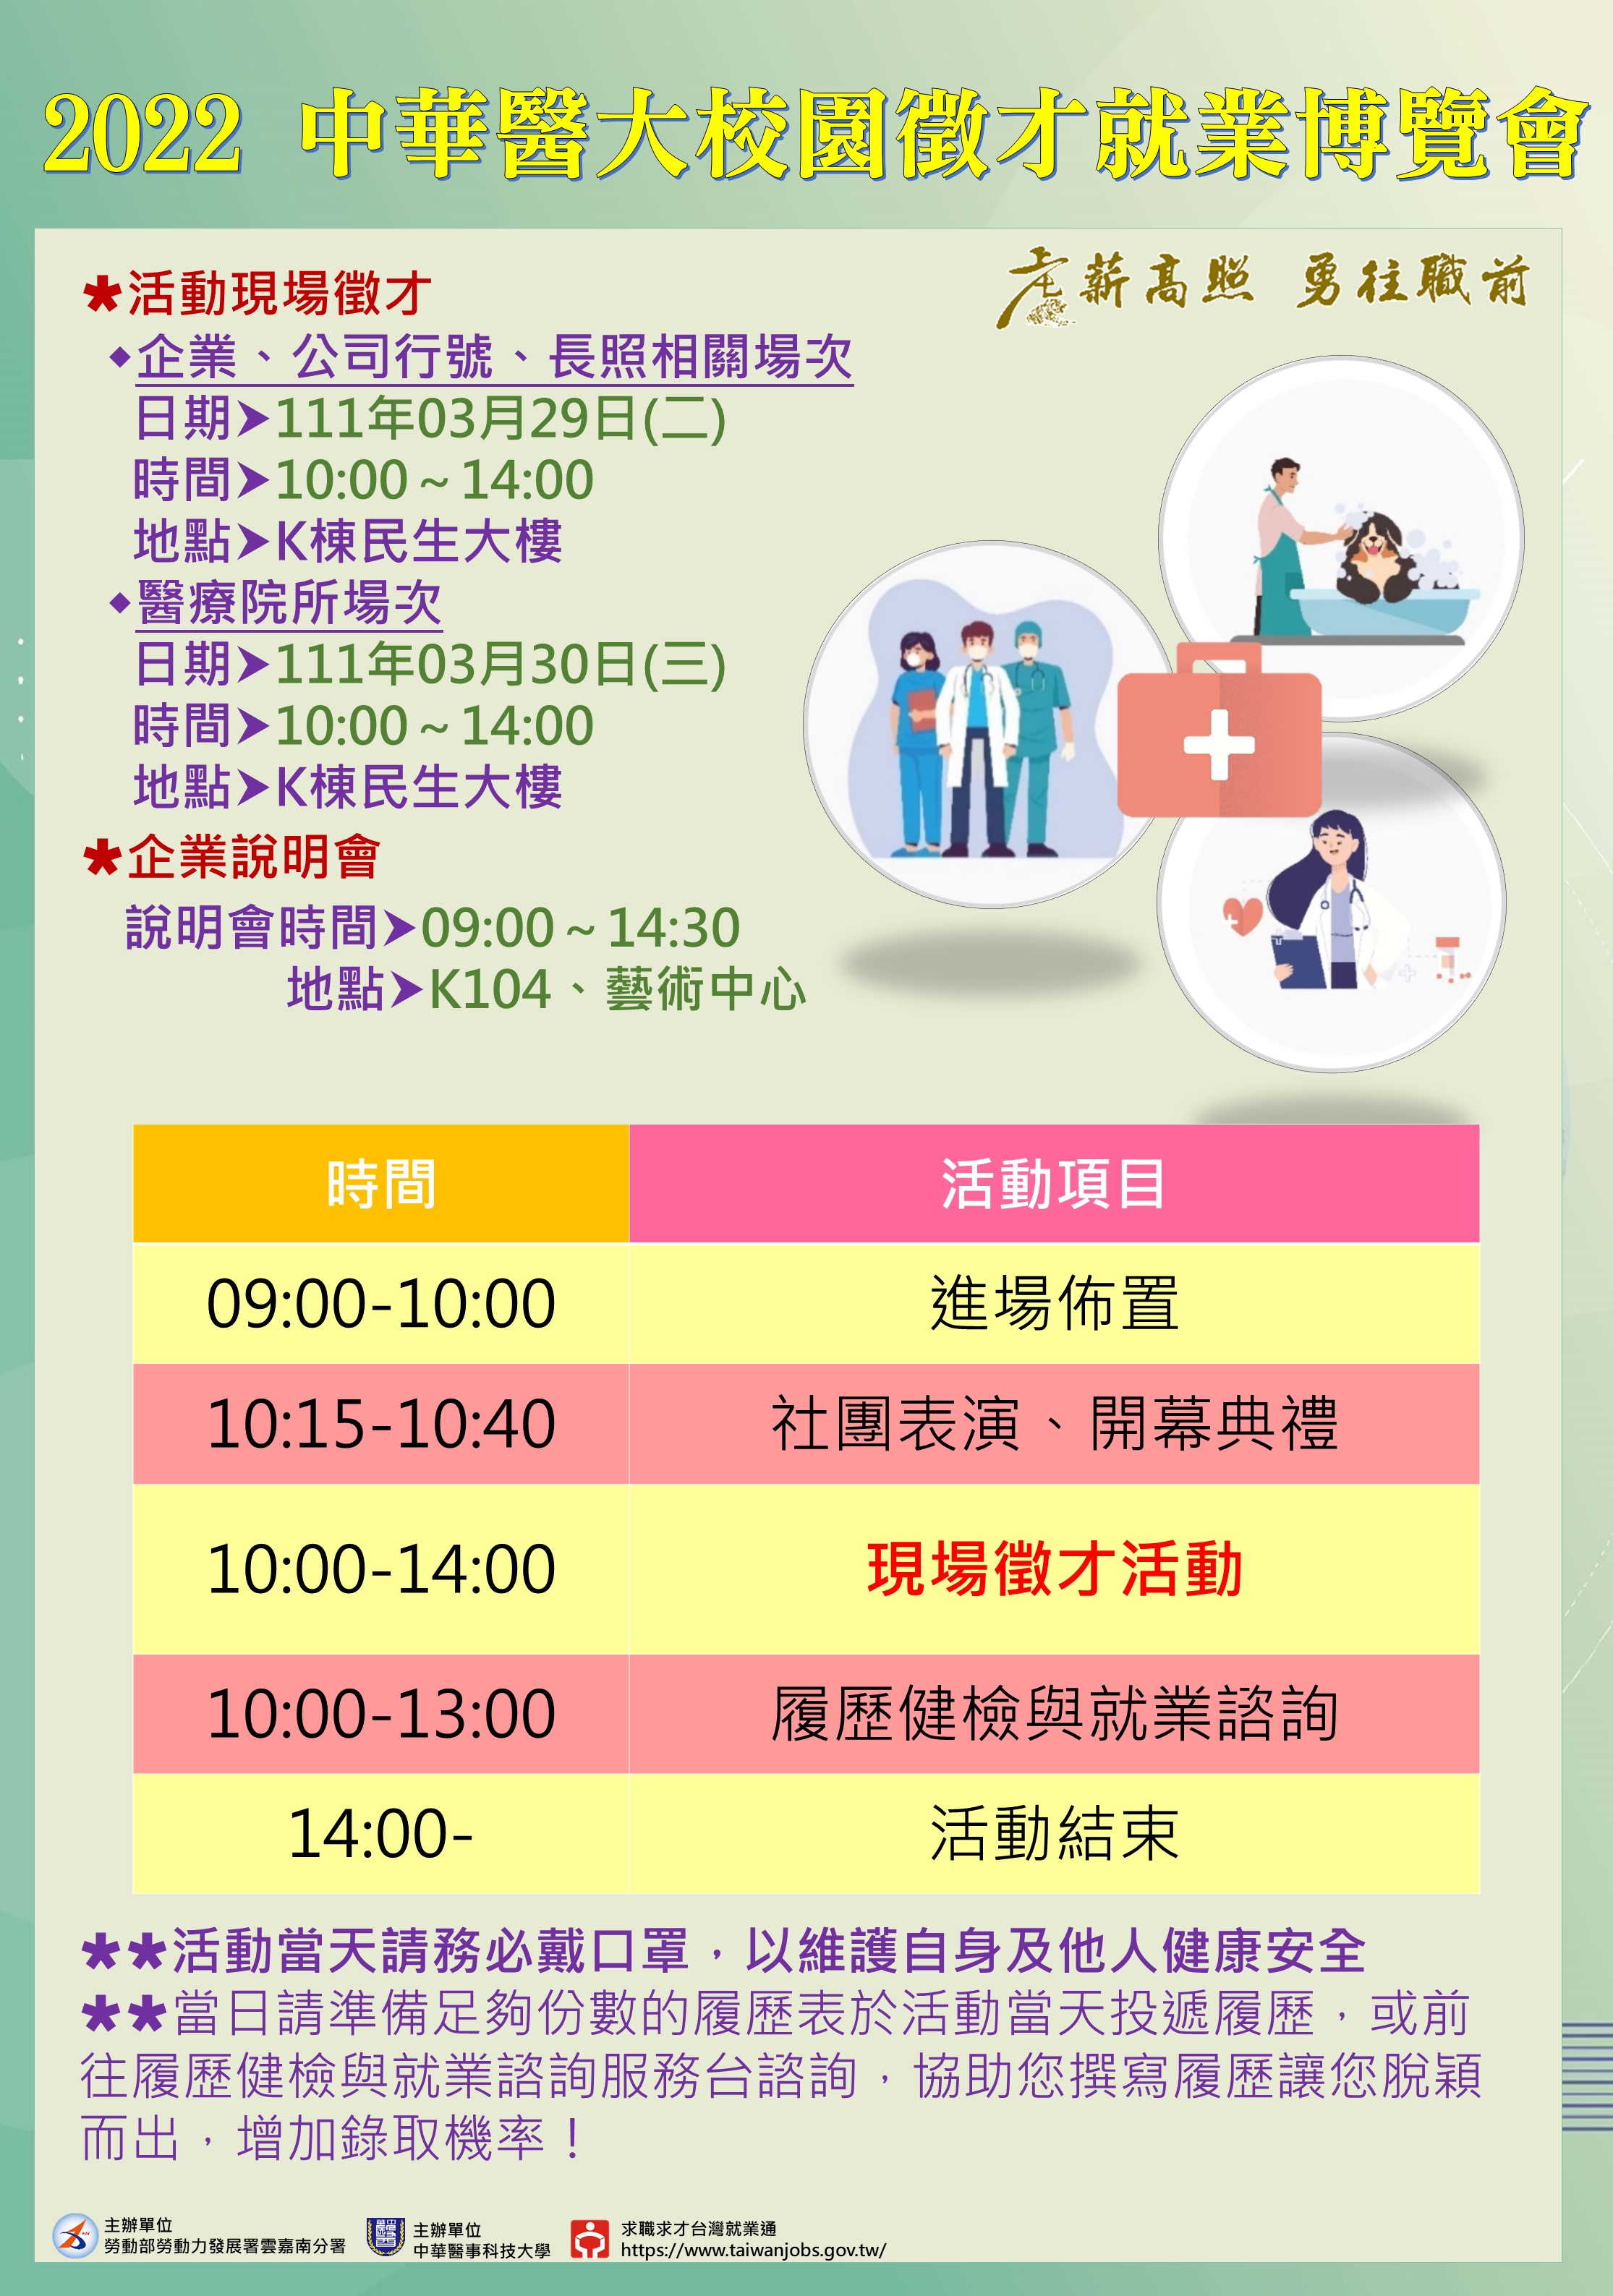 中华医事科技大学就业博览会